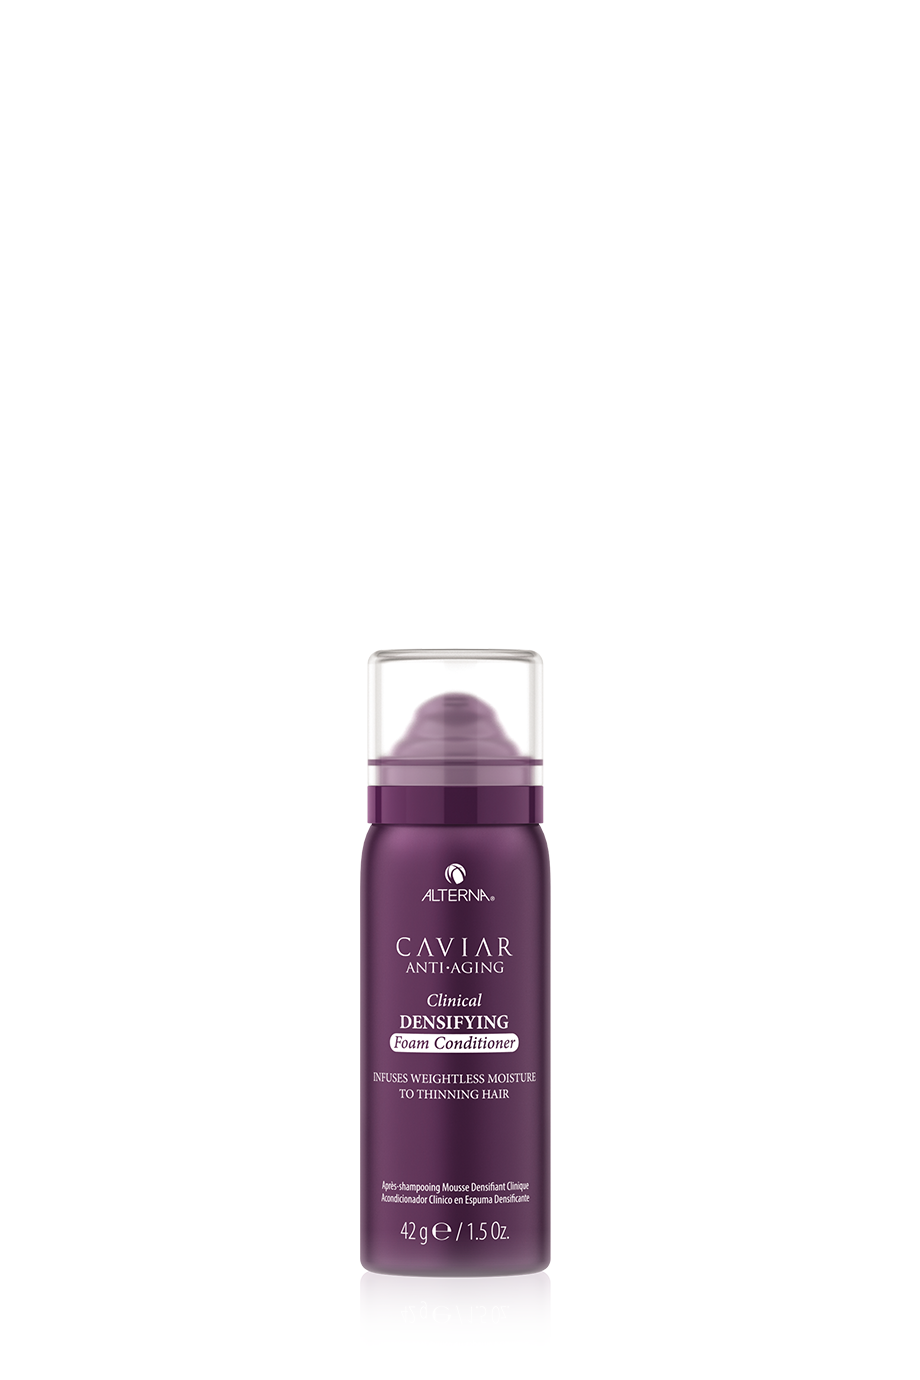 Alterna Caviar Anti-Aging Clinical Densifying Foam Conditioner 42g - интернет-магазин профессиональной косметики Spadream, изображение 39947